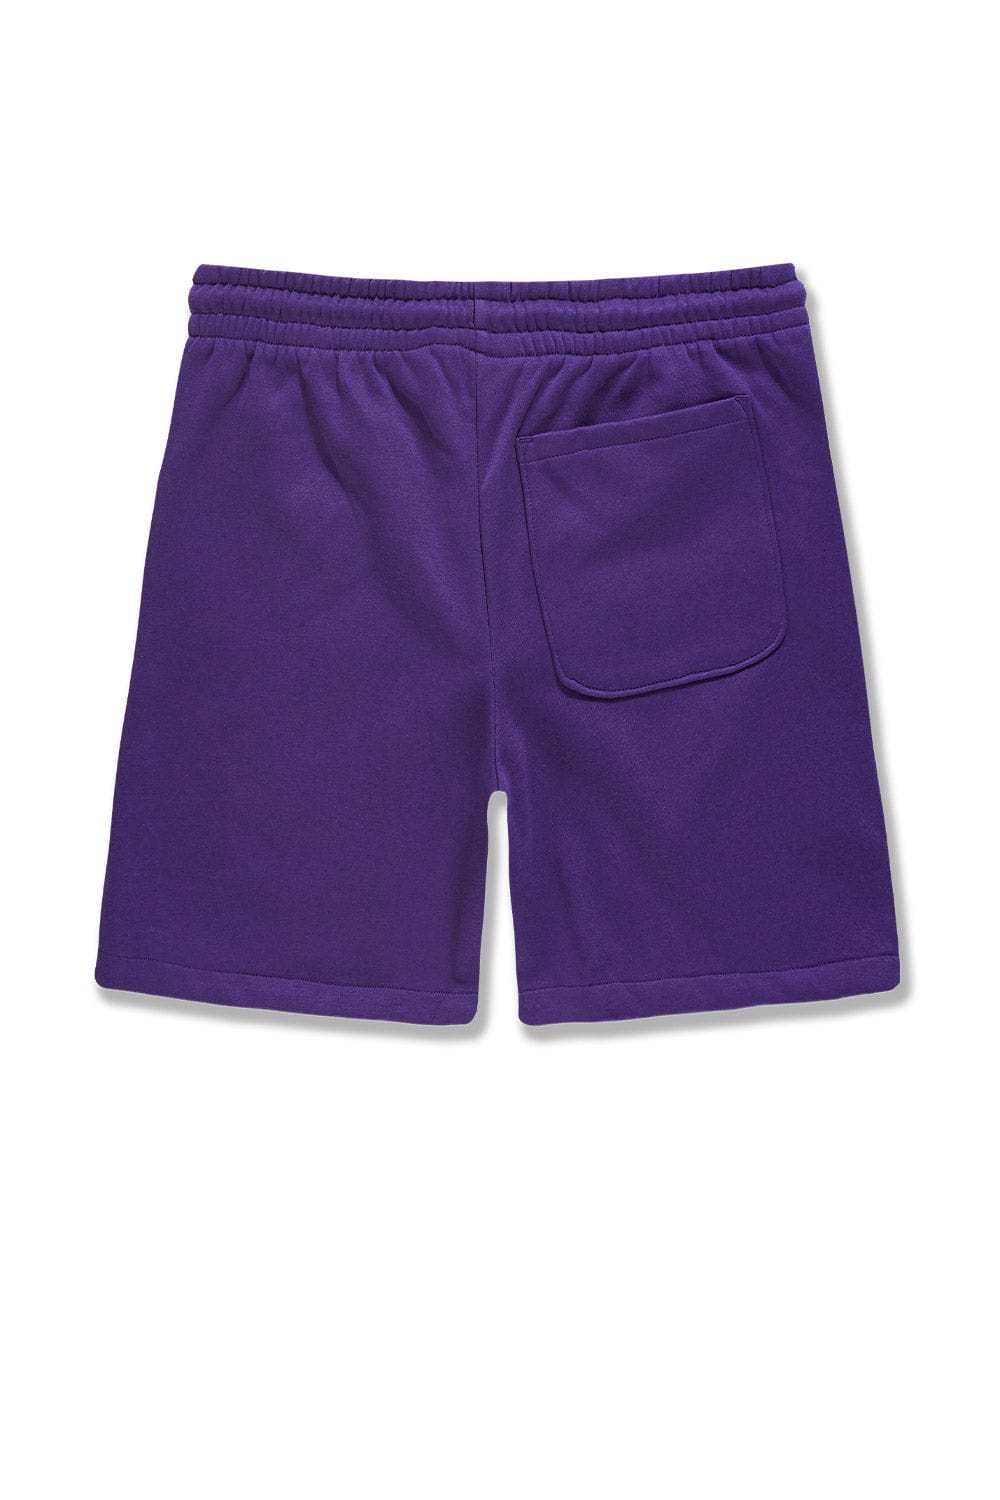 JC Big Men Big Men's Retro Paradise Tonal Shorts (Purple)